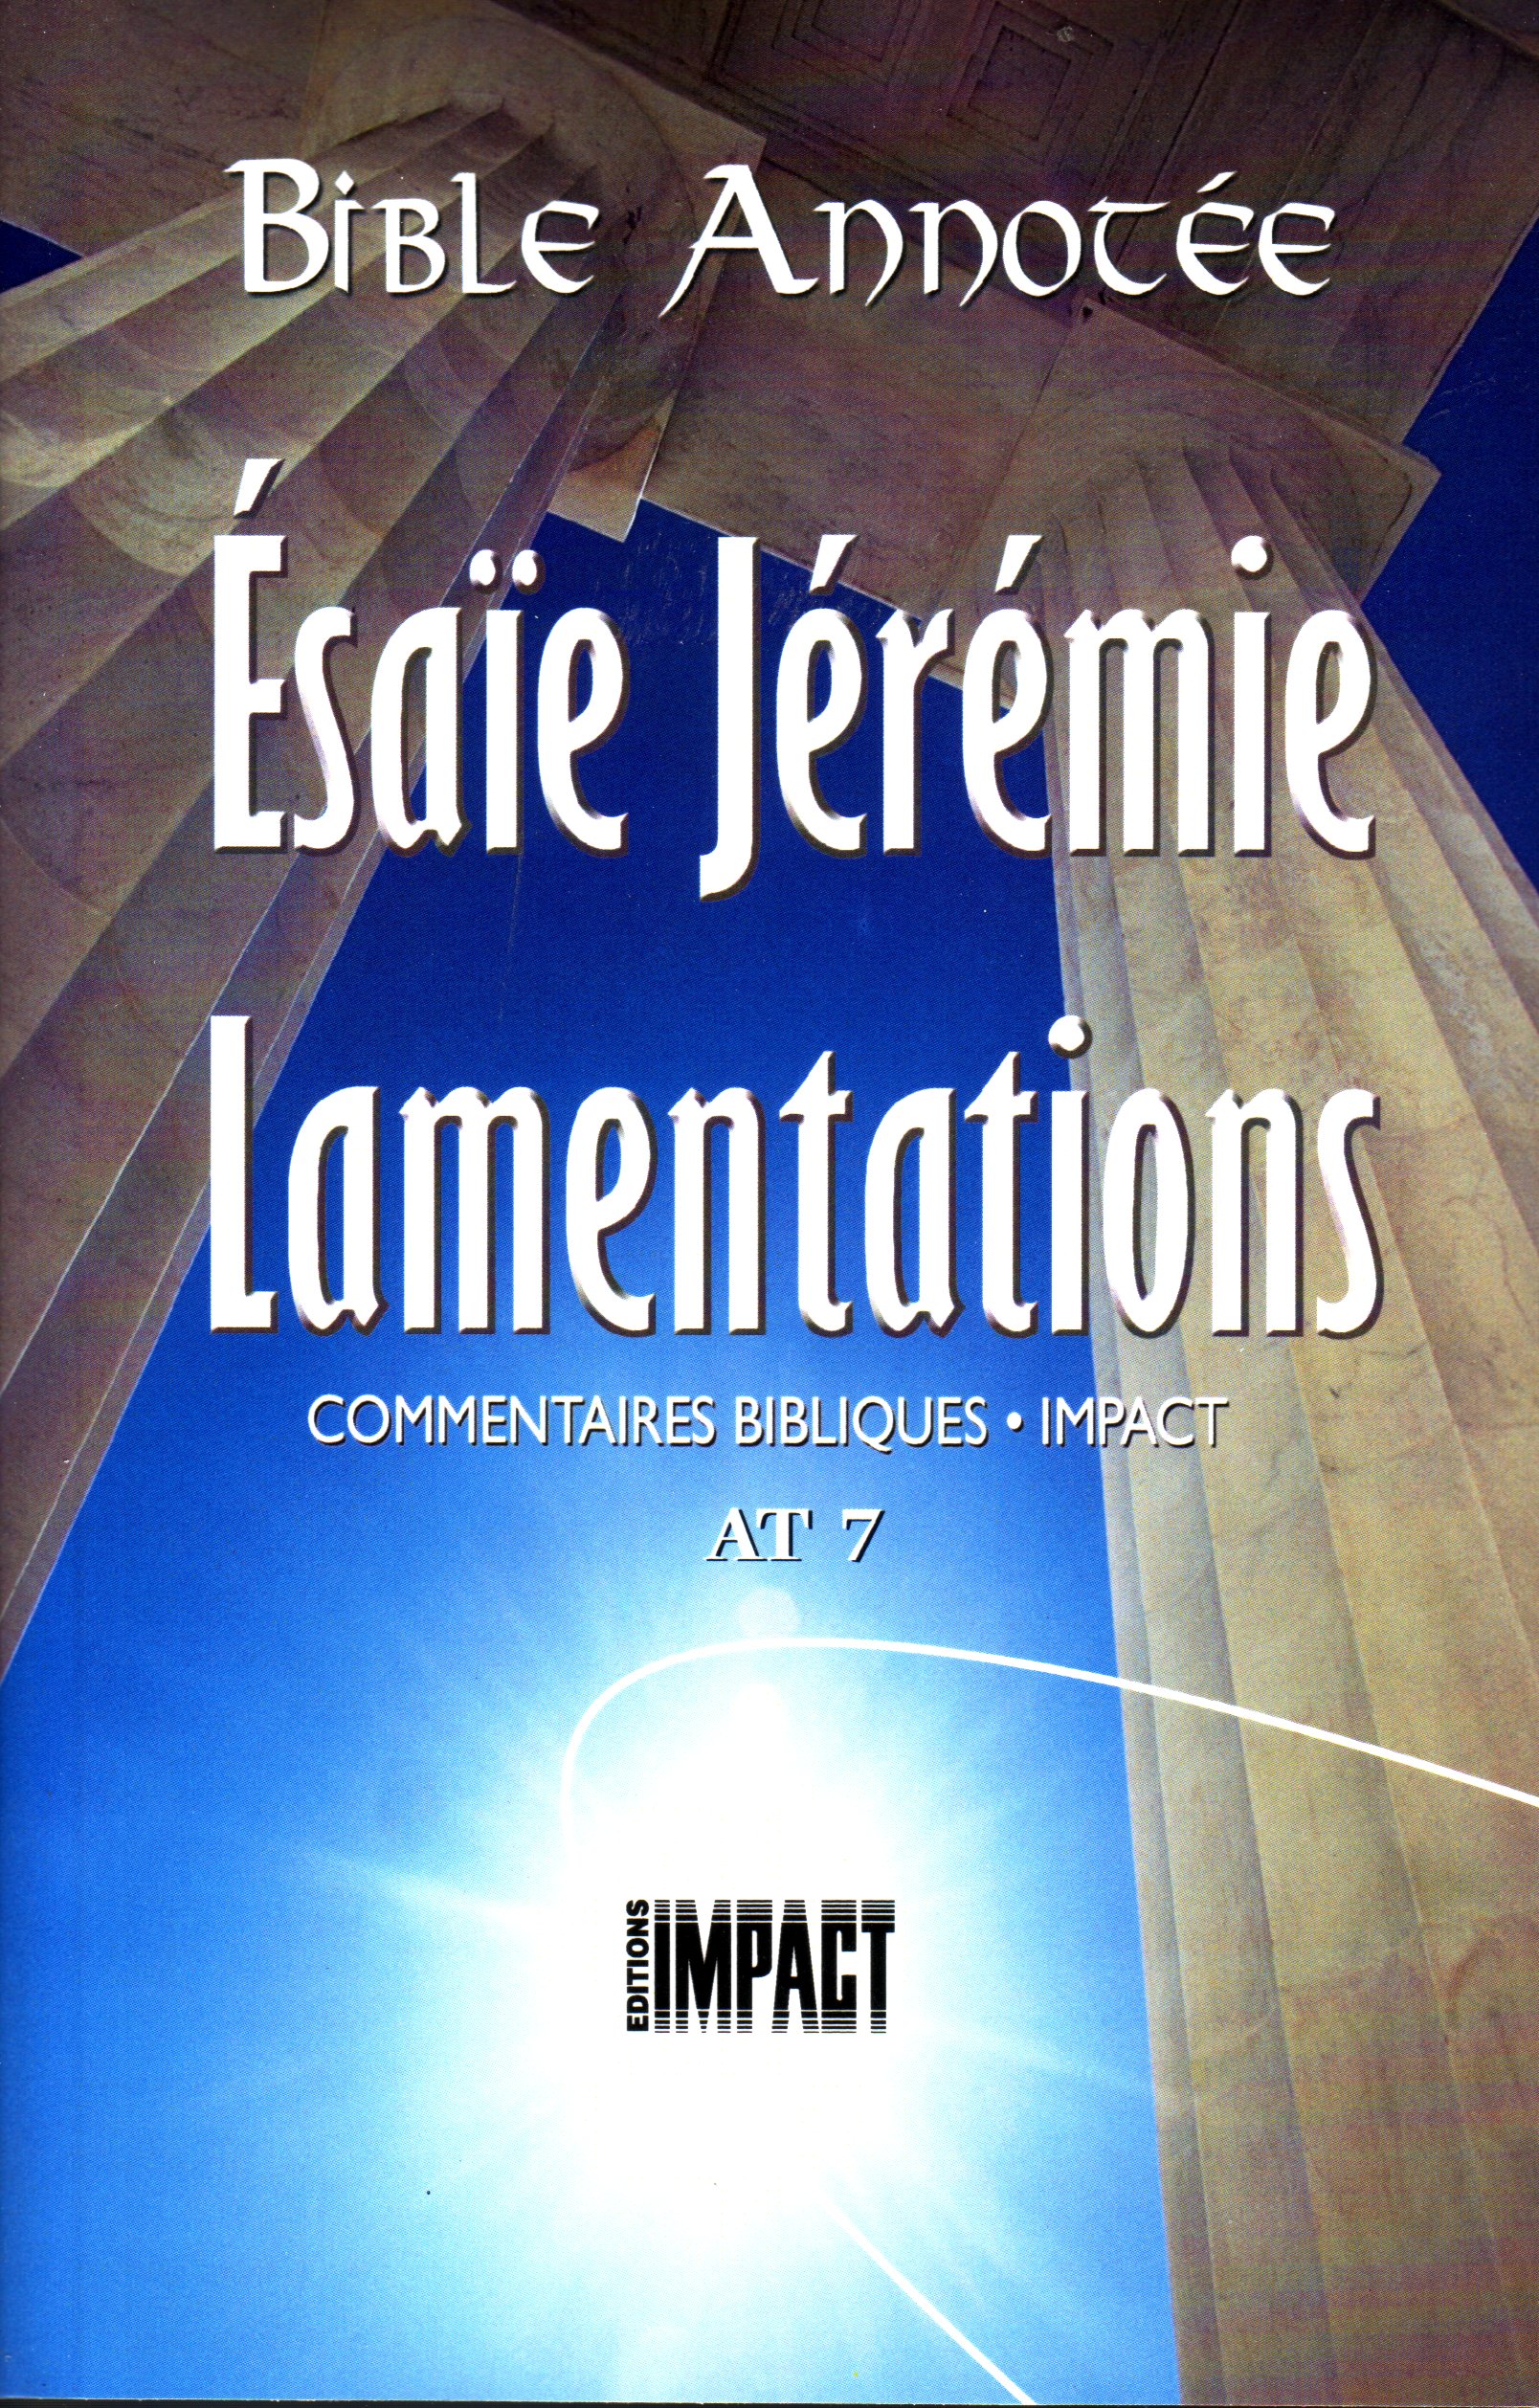 Bible Annotée (La), Ésaïe Jérémie Lamentations - Commentaires bibliques Impact AT 7